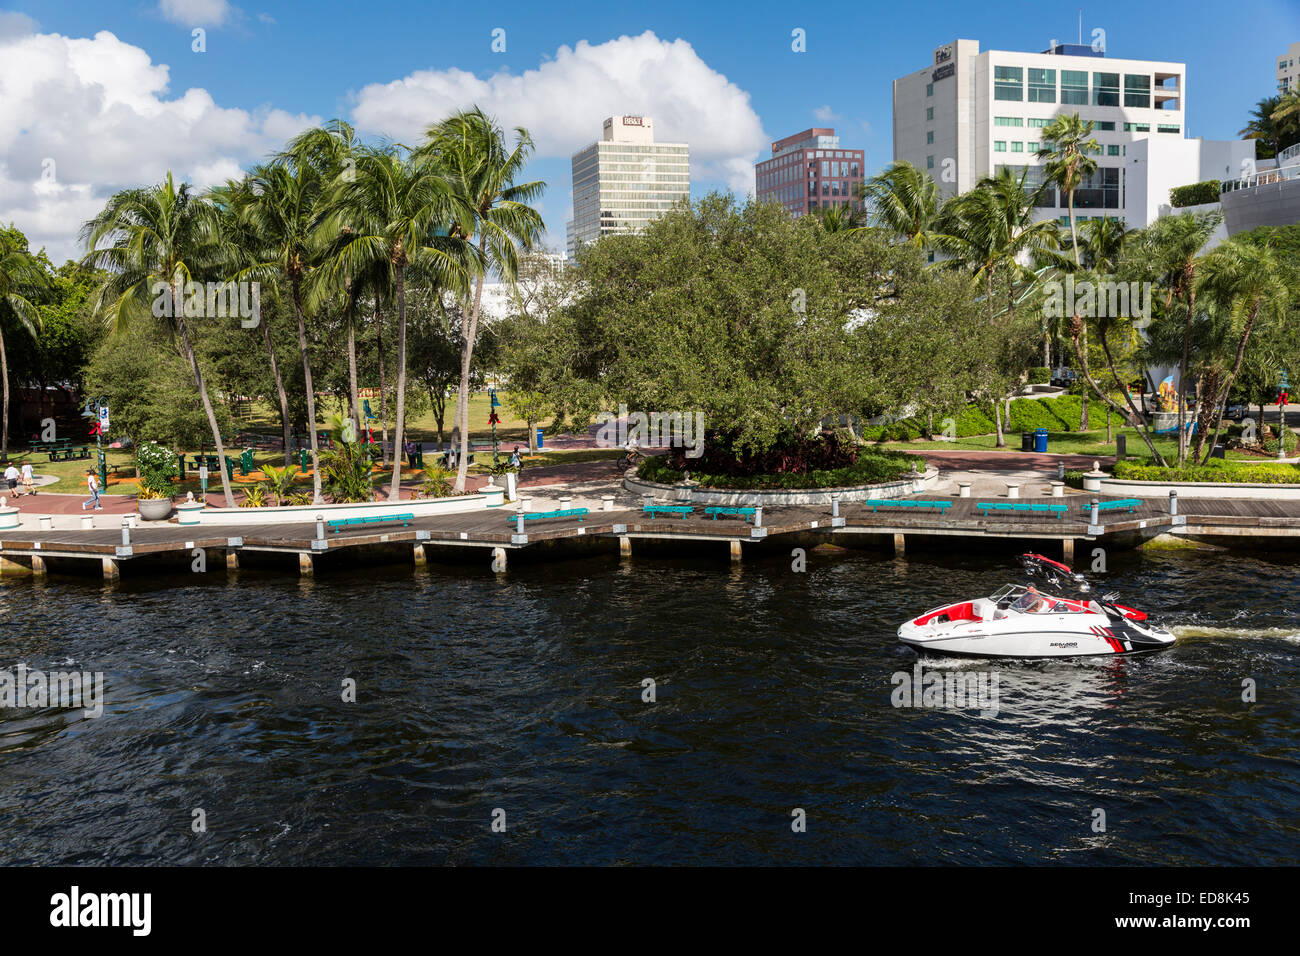 Ft. Lauderdale, Florida. Imbarcazione da diporto sul fiume di nuovo passando H. Wayne Huizenga Plaza, precedentemente Bubier Park. Foto Stock